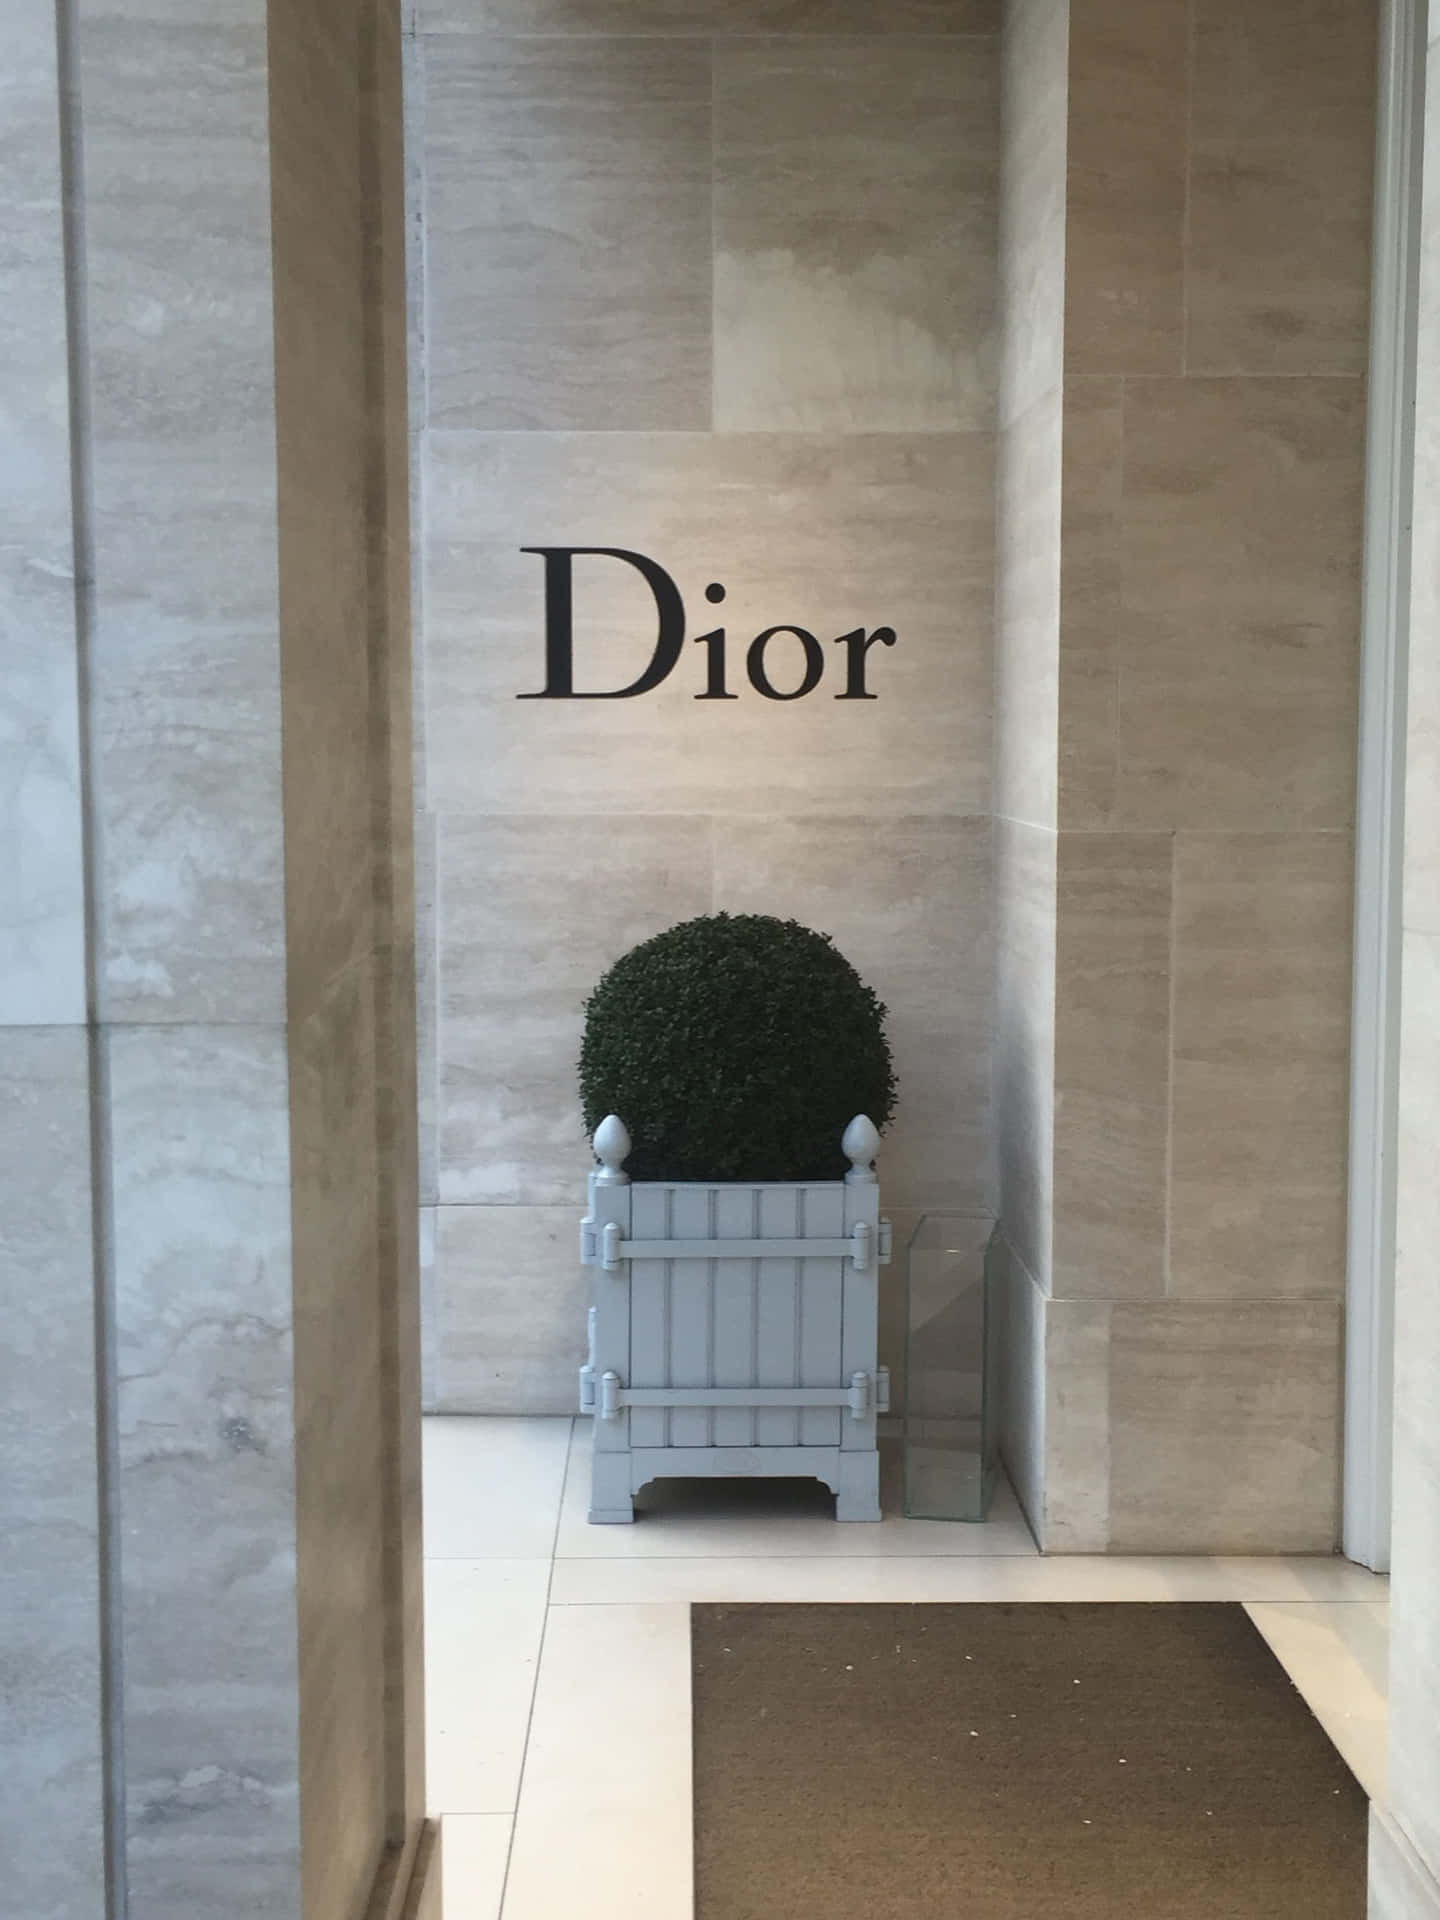 Illuminala Tua Giornata Con Dior!